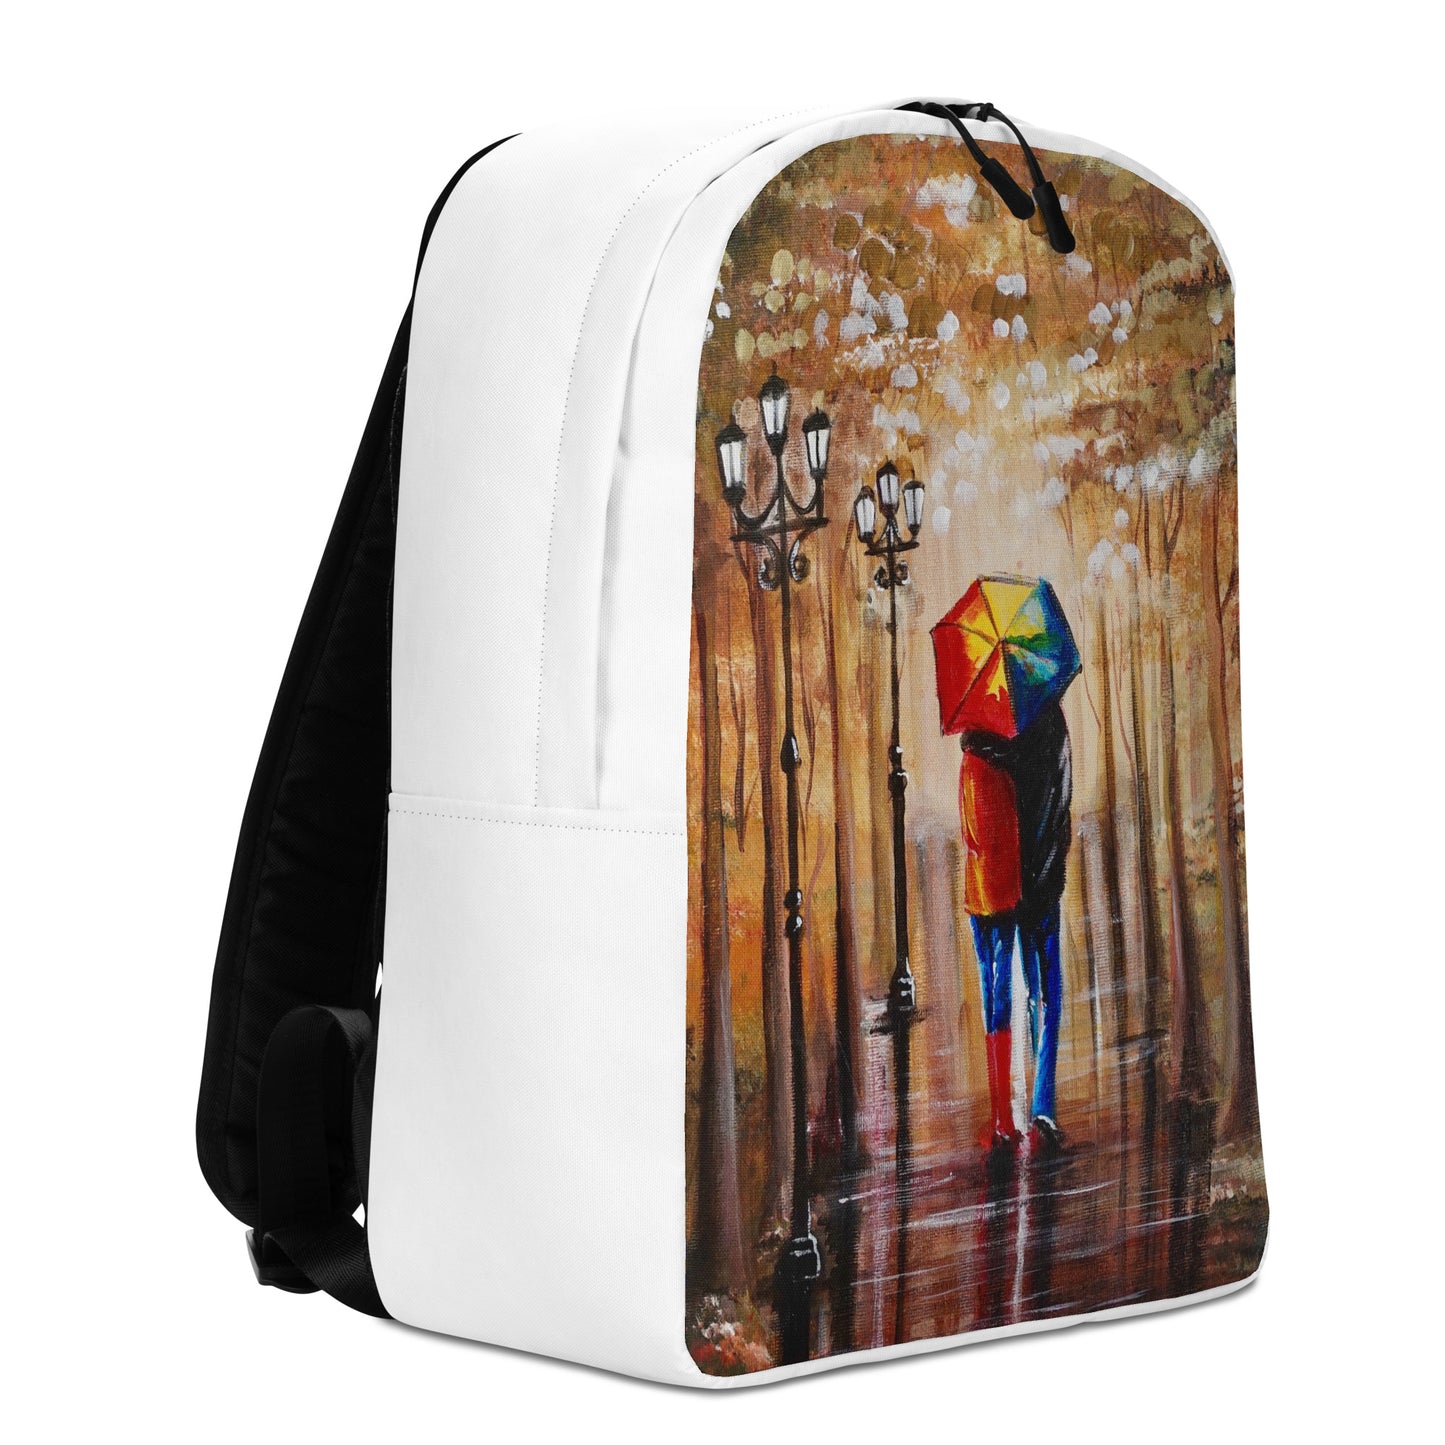 Backpack "Couple in the rain" Ideal for laptop Secret pocket Travel Art